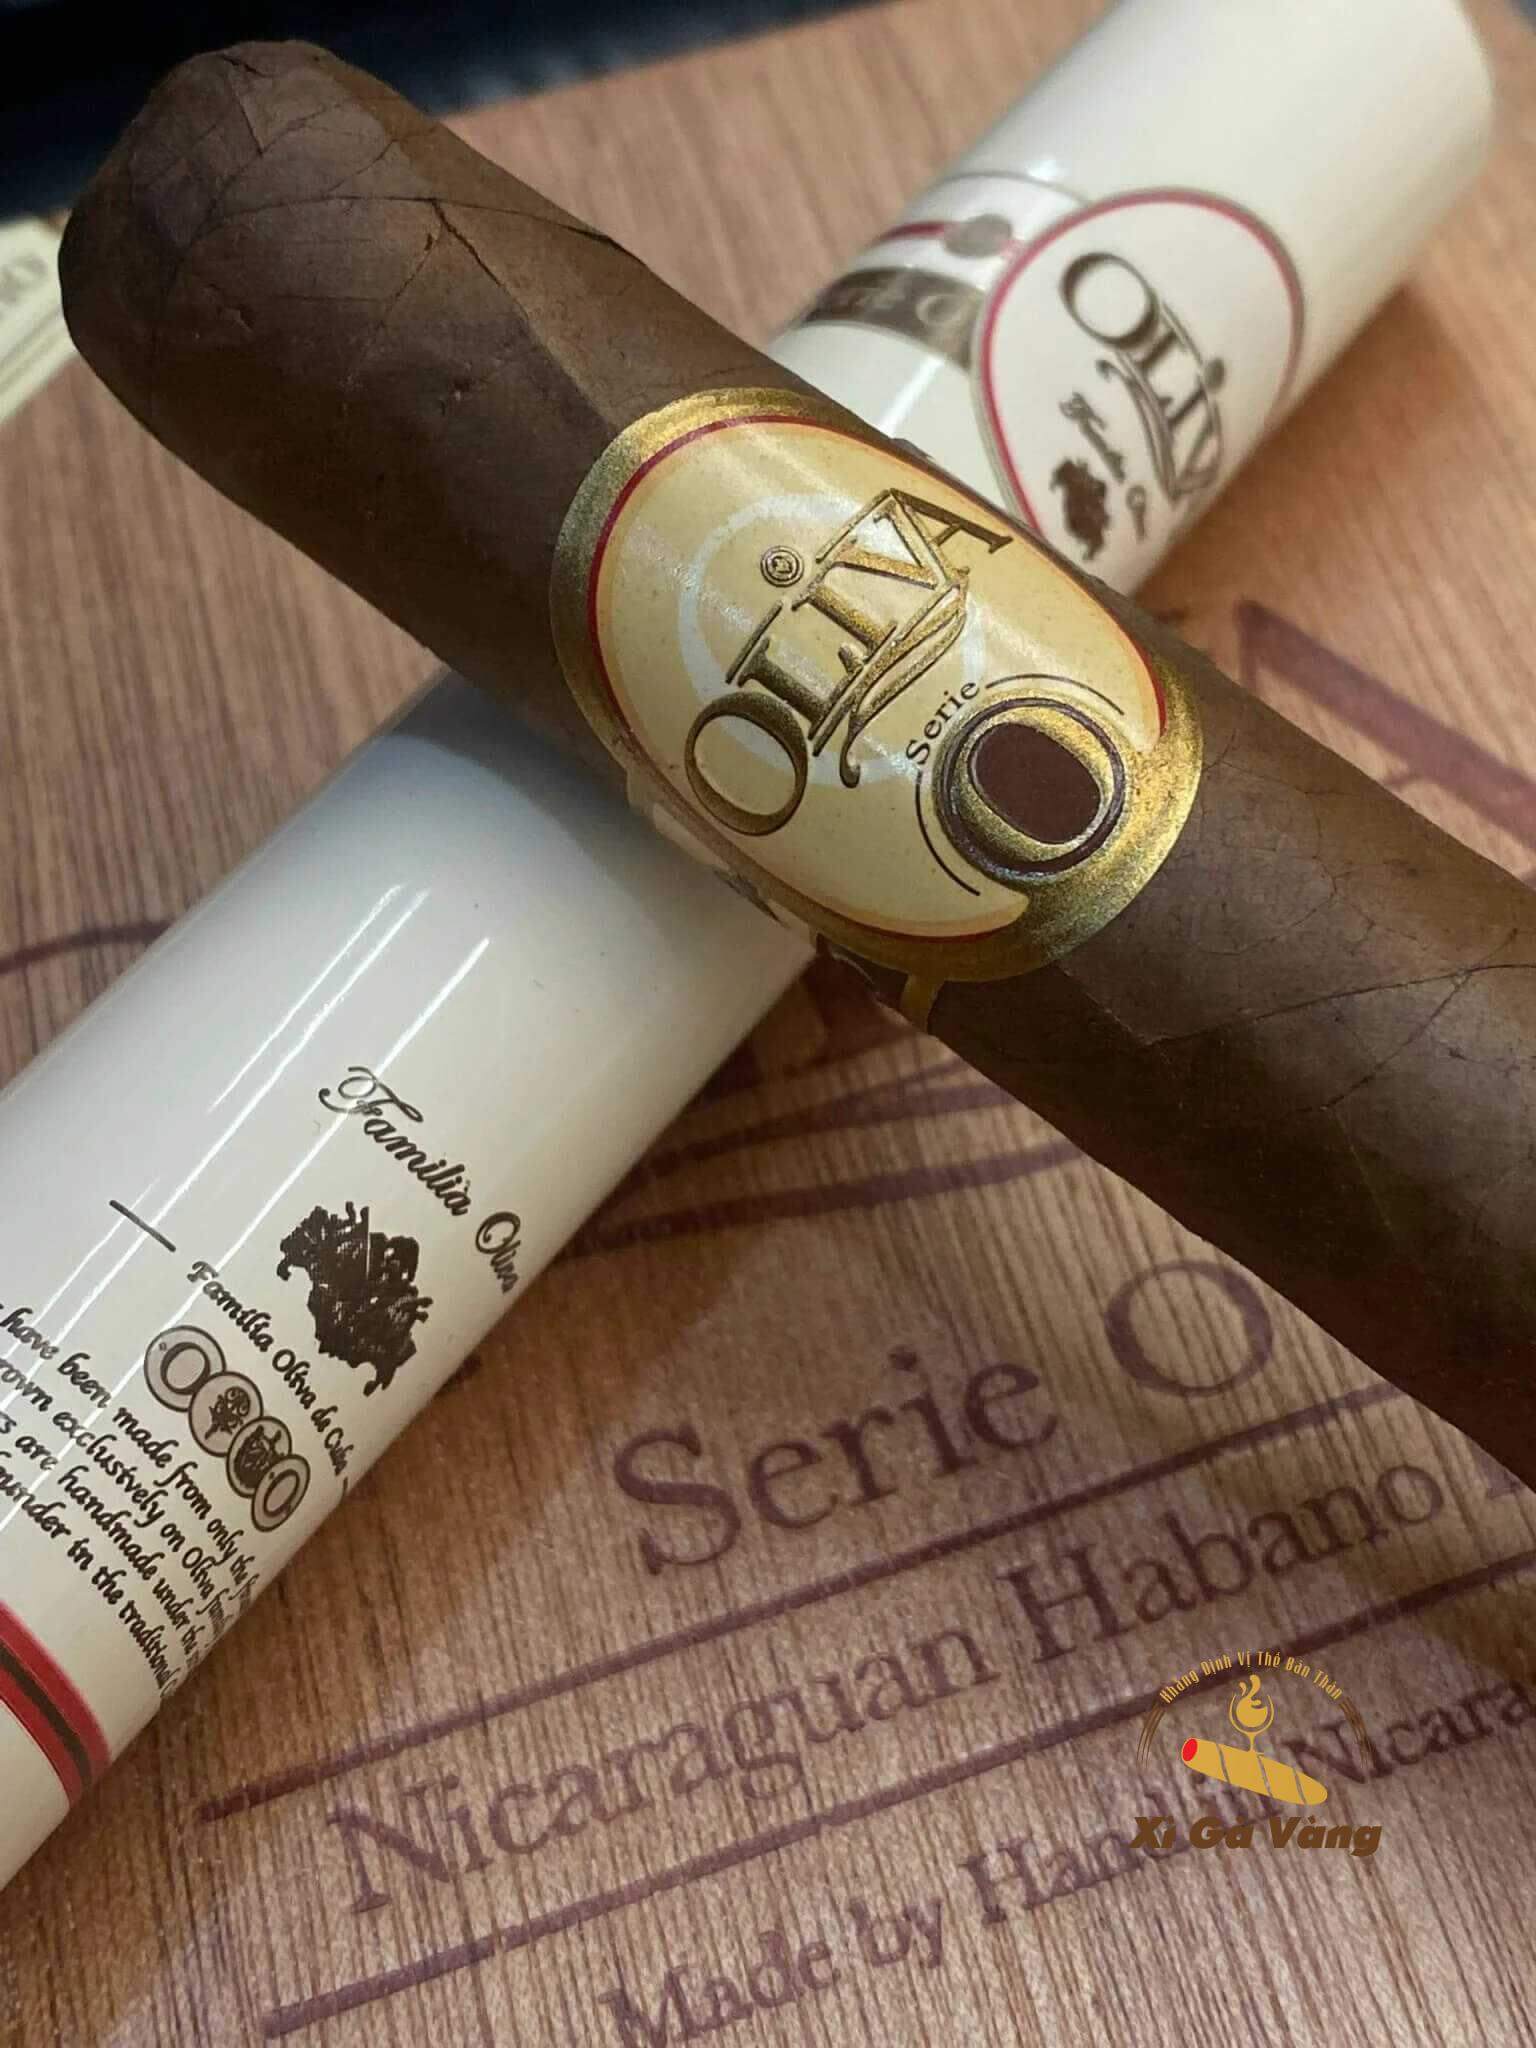 Oliva Serie O Toro Tubos là xì gà nguyên chất của người Cuba cổ điển